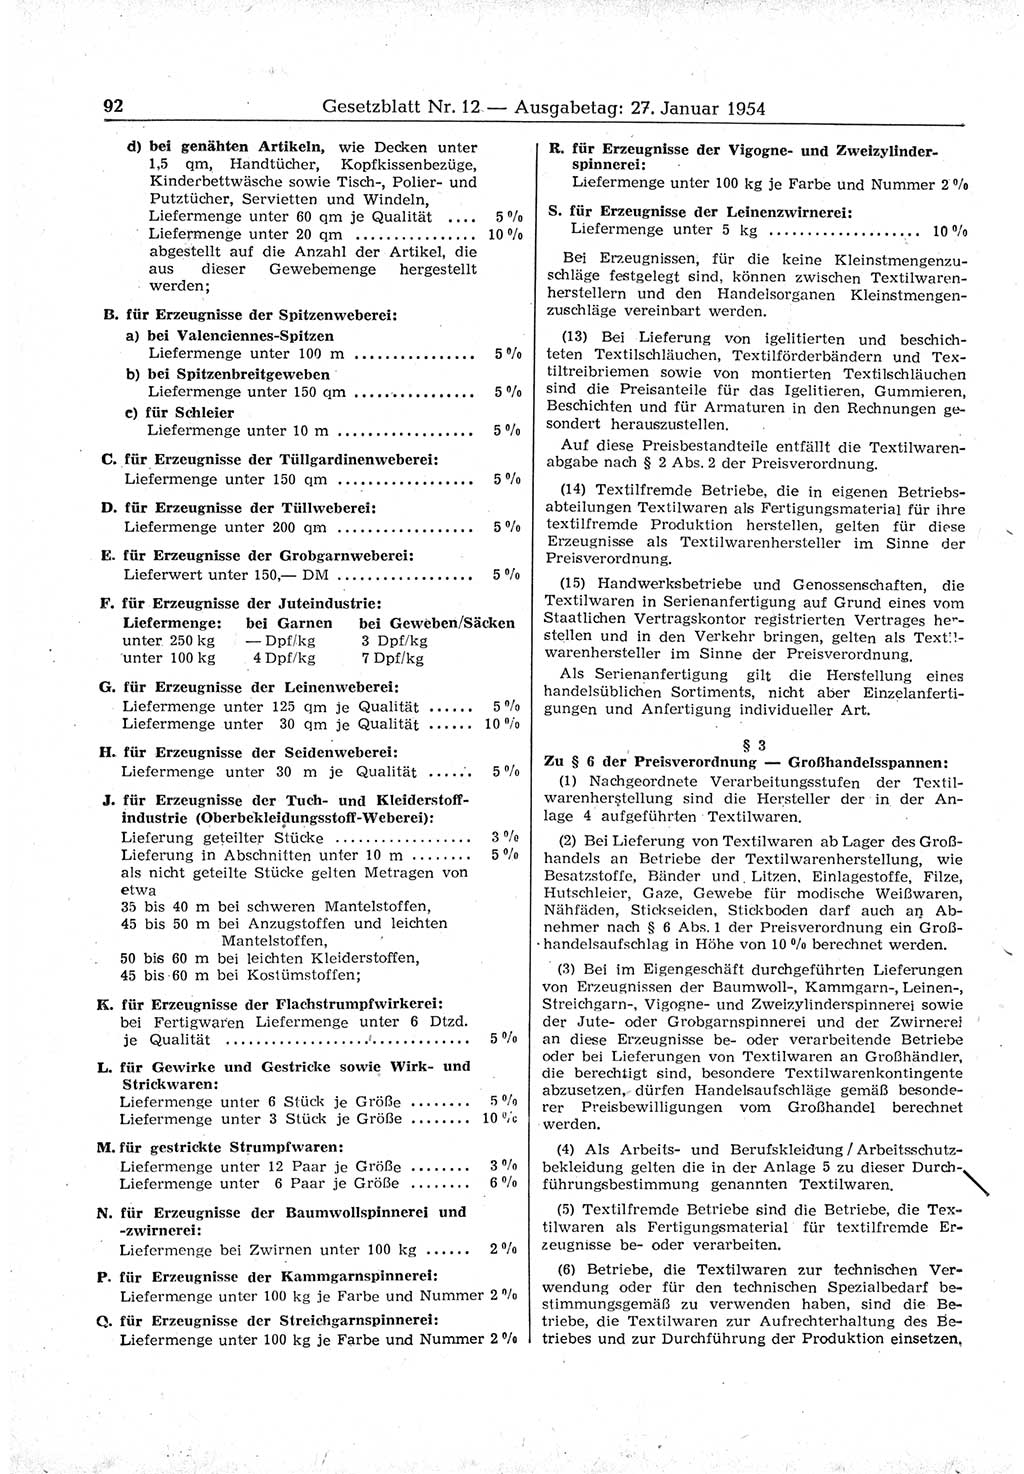 Gesetzblatt (GBl.) der Deutschen Demokratischen Republik (DDR) 1954, Seite 92 (GBl. DDR 1954, S. 92)